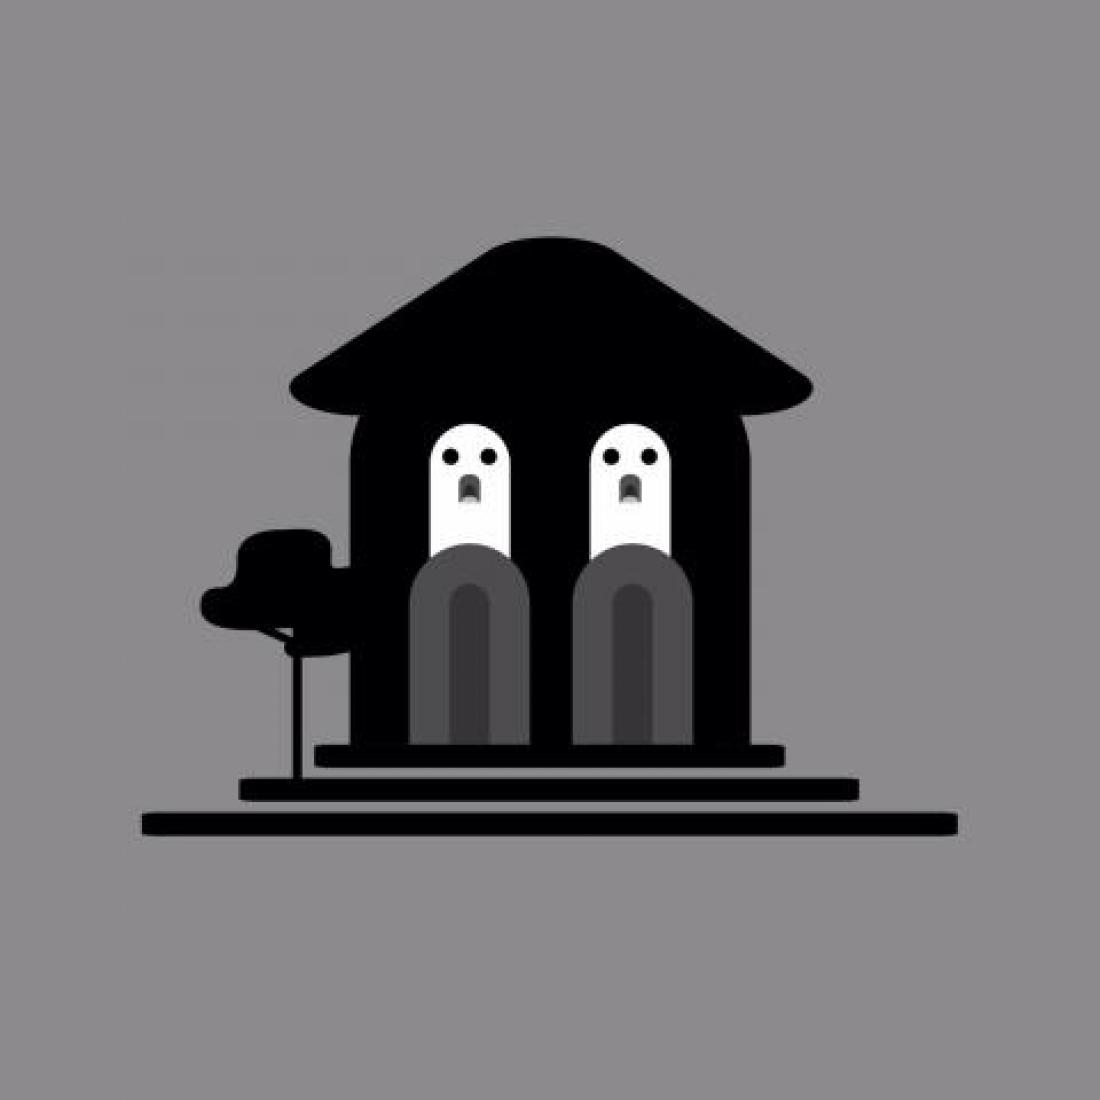 Symbolbild des Spiels "Majorelle Mystery": Stilisierte Darstellung der Villa Majorelle mit zwei Geistern anstelle der Fenster